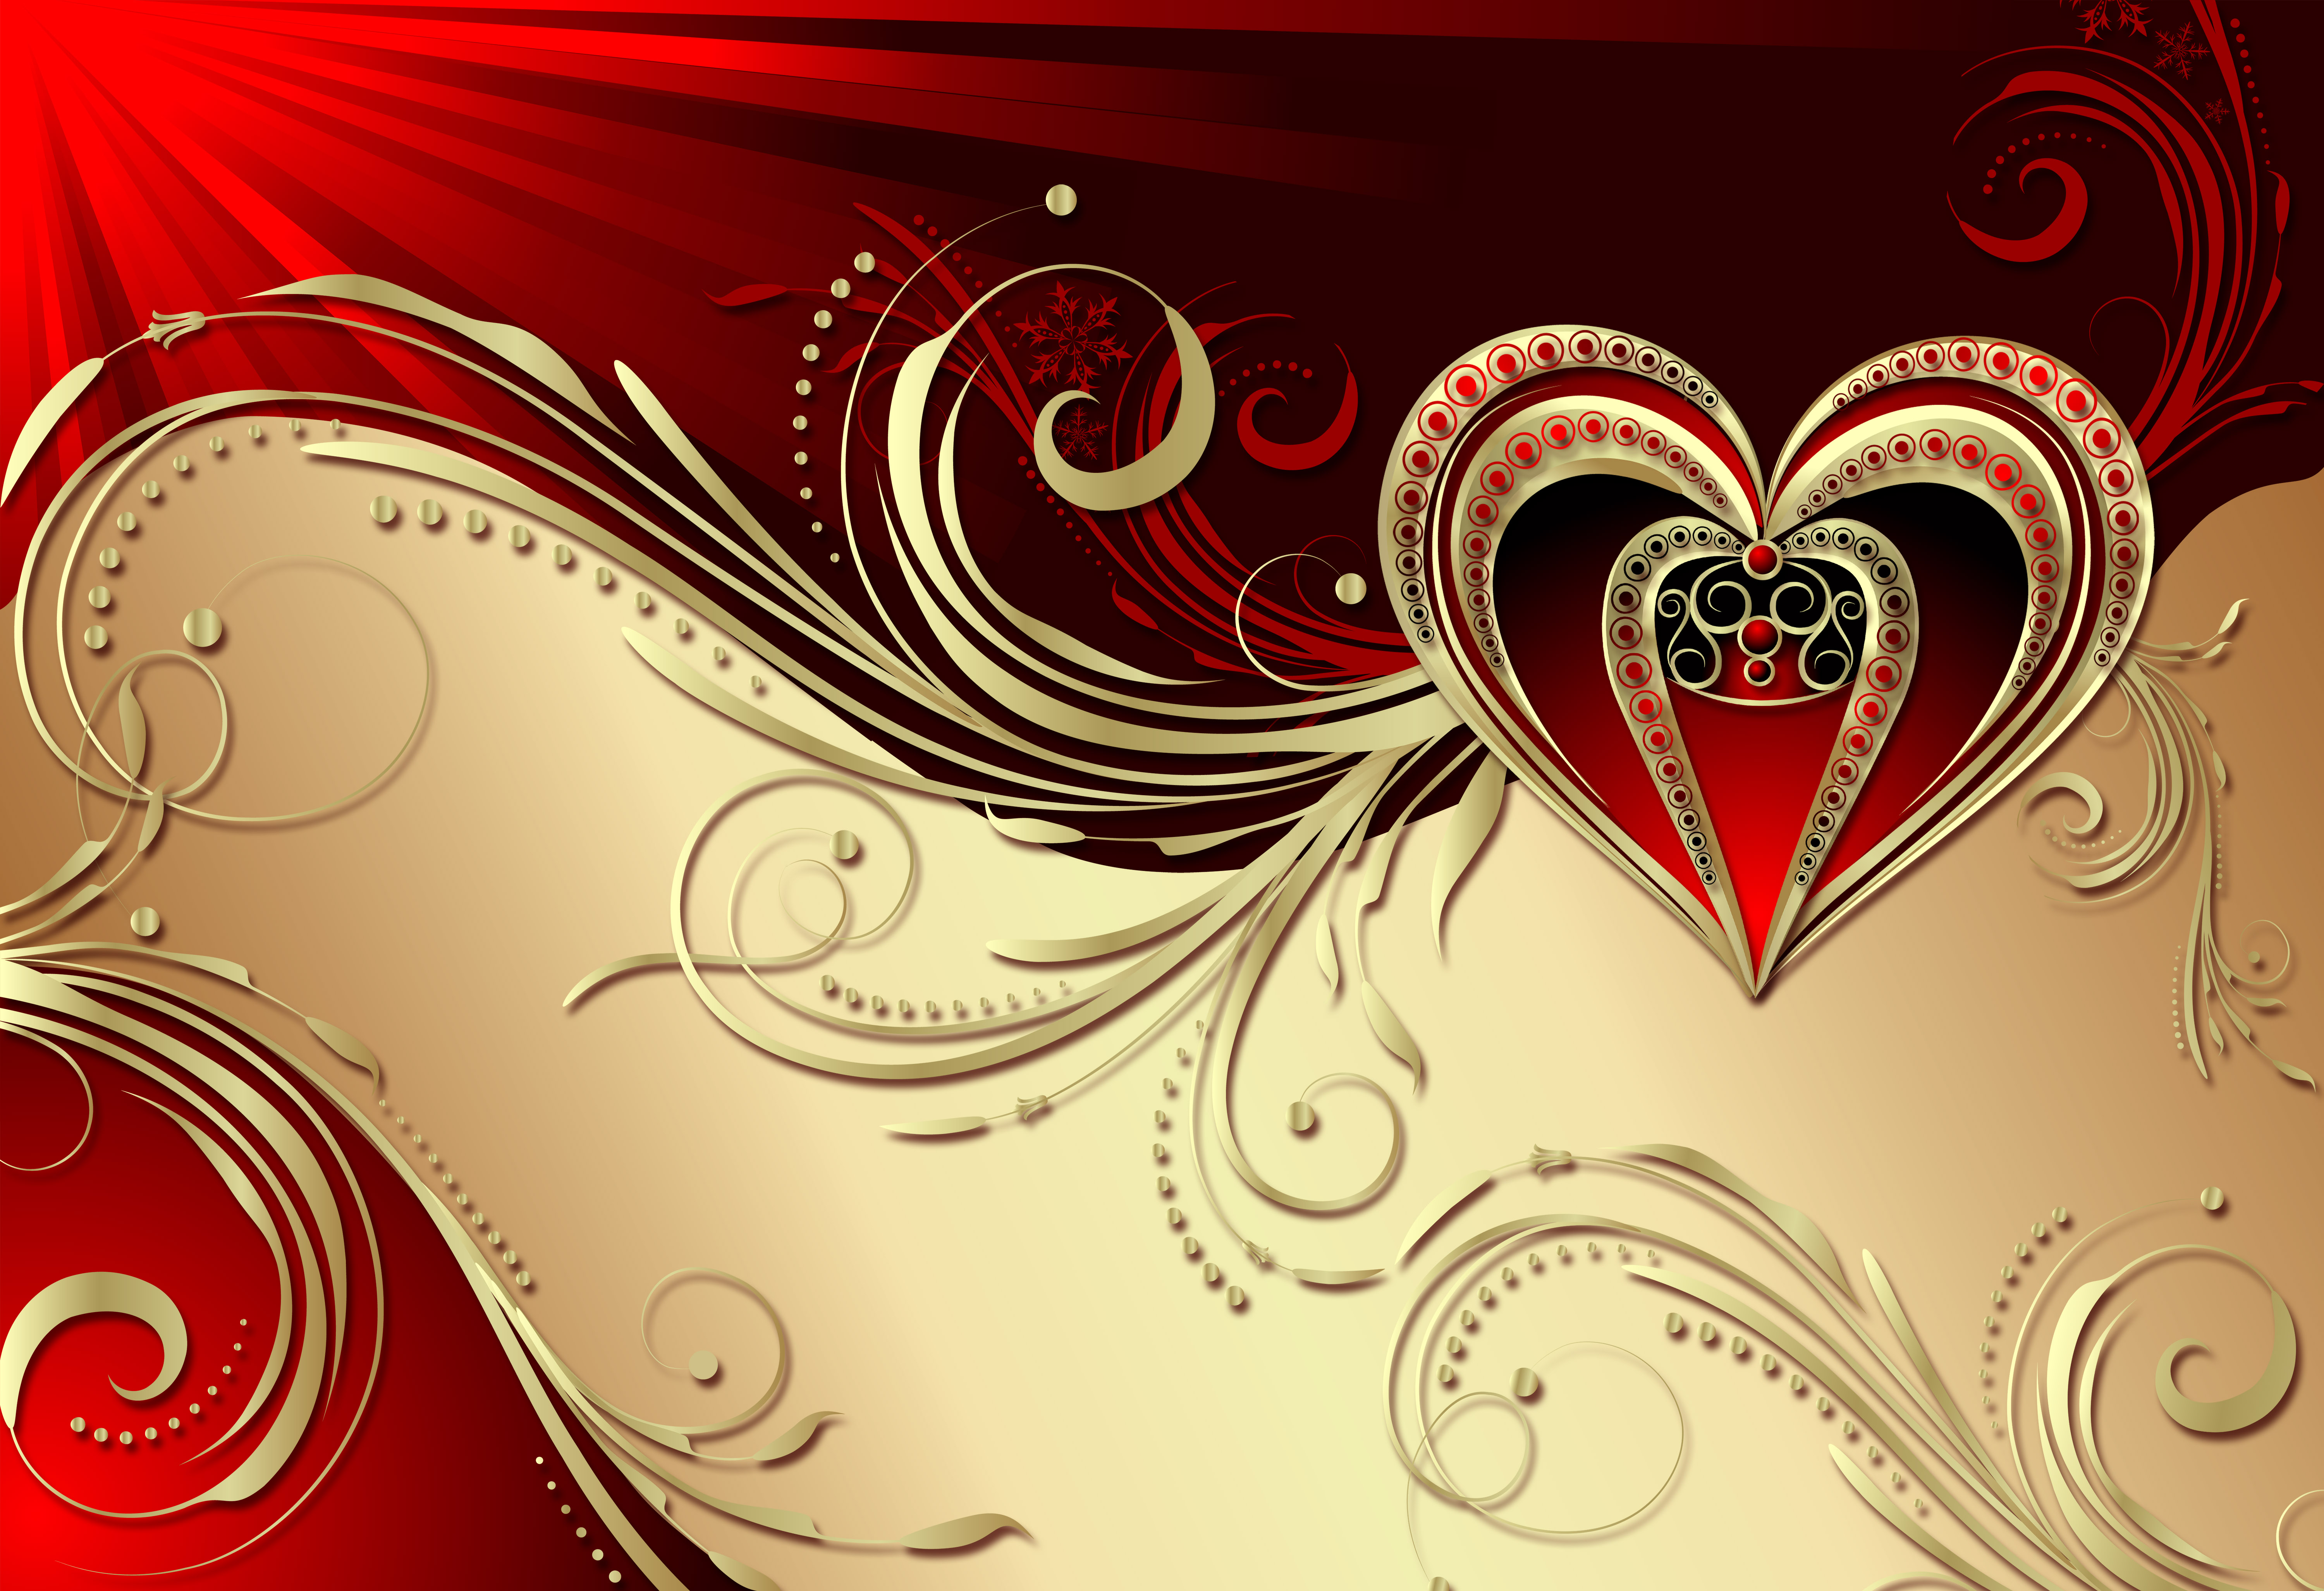 Feiertage Valentinstag HD Wallpaper | Hintergrund